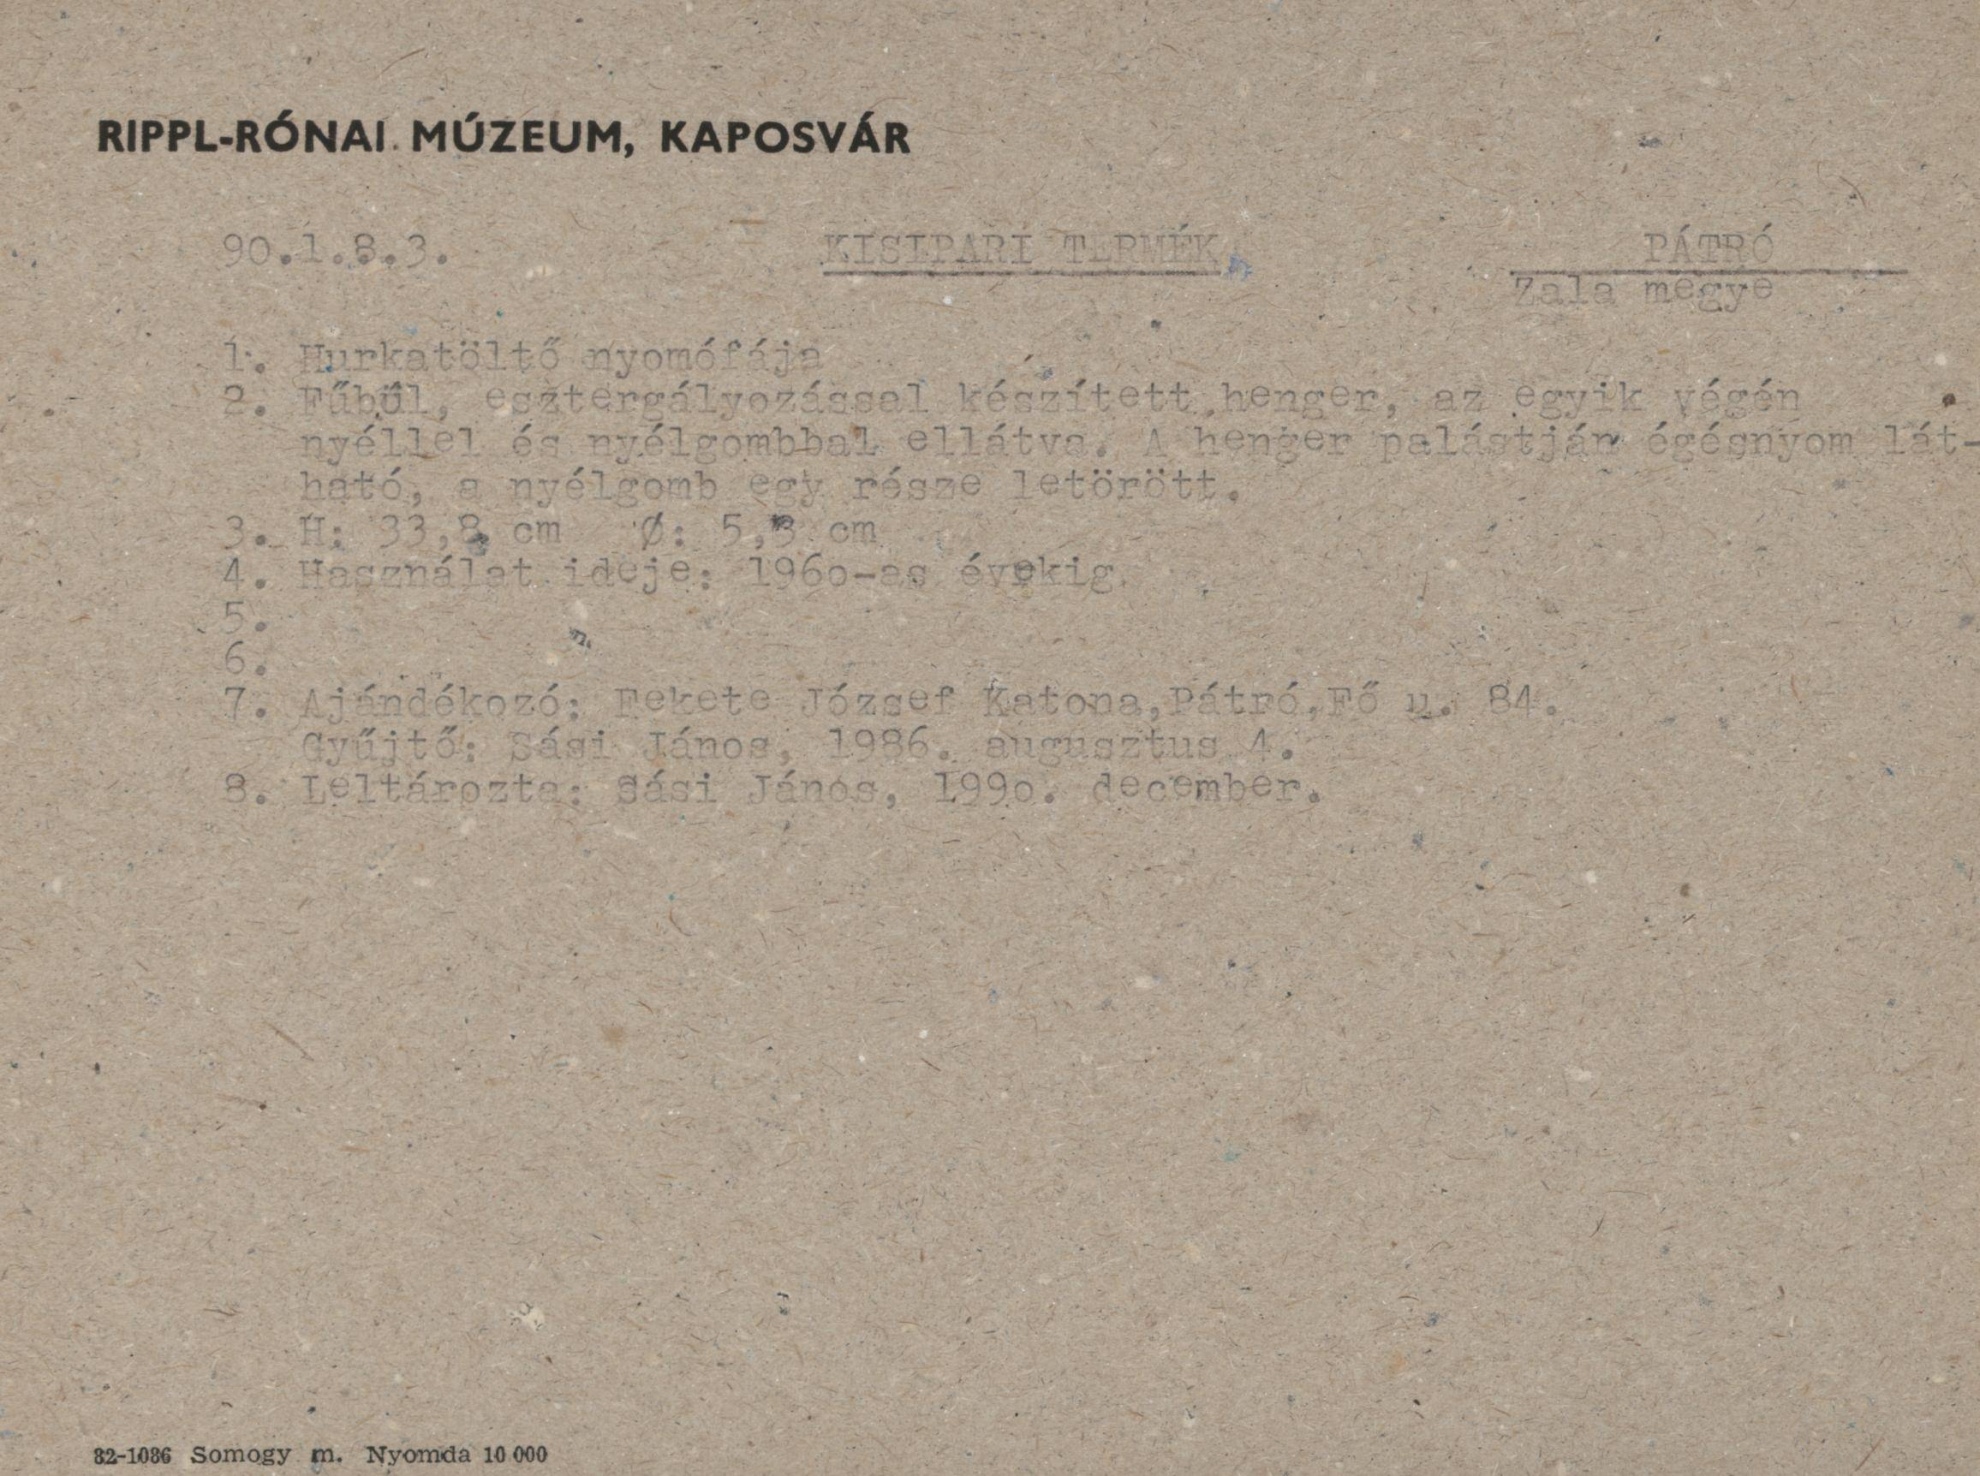 Hurkatöltő nyomófája (Rippl-Rónai Múzeum CC BY-NC-SA)